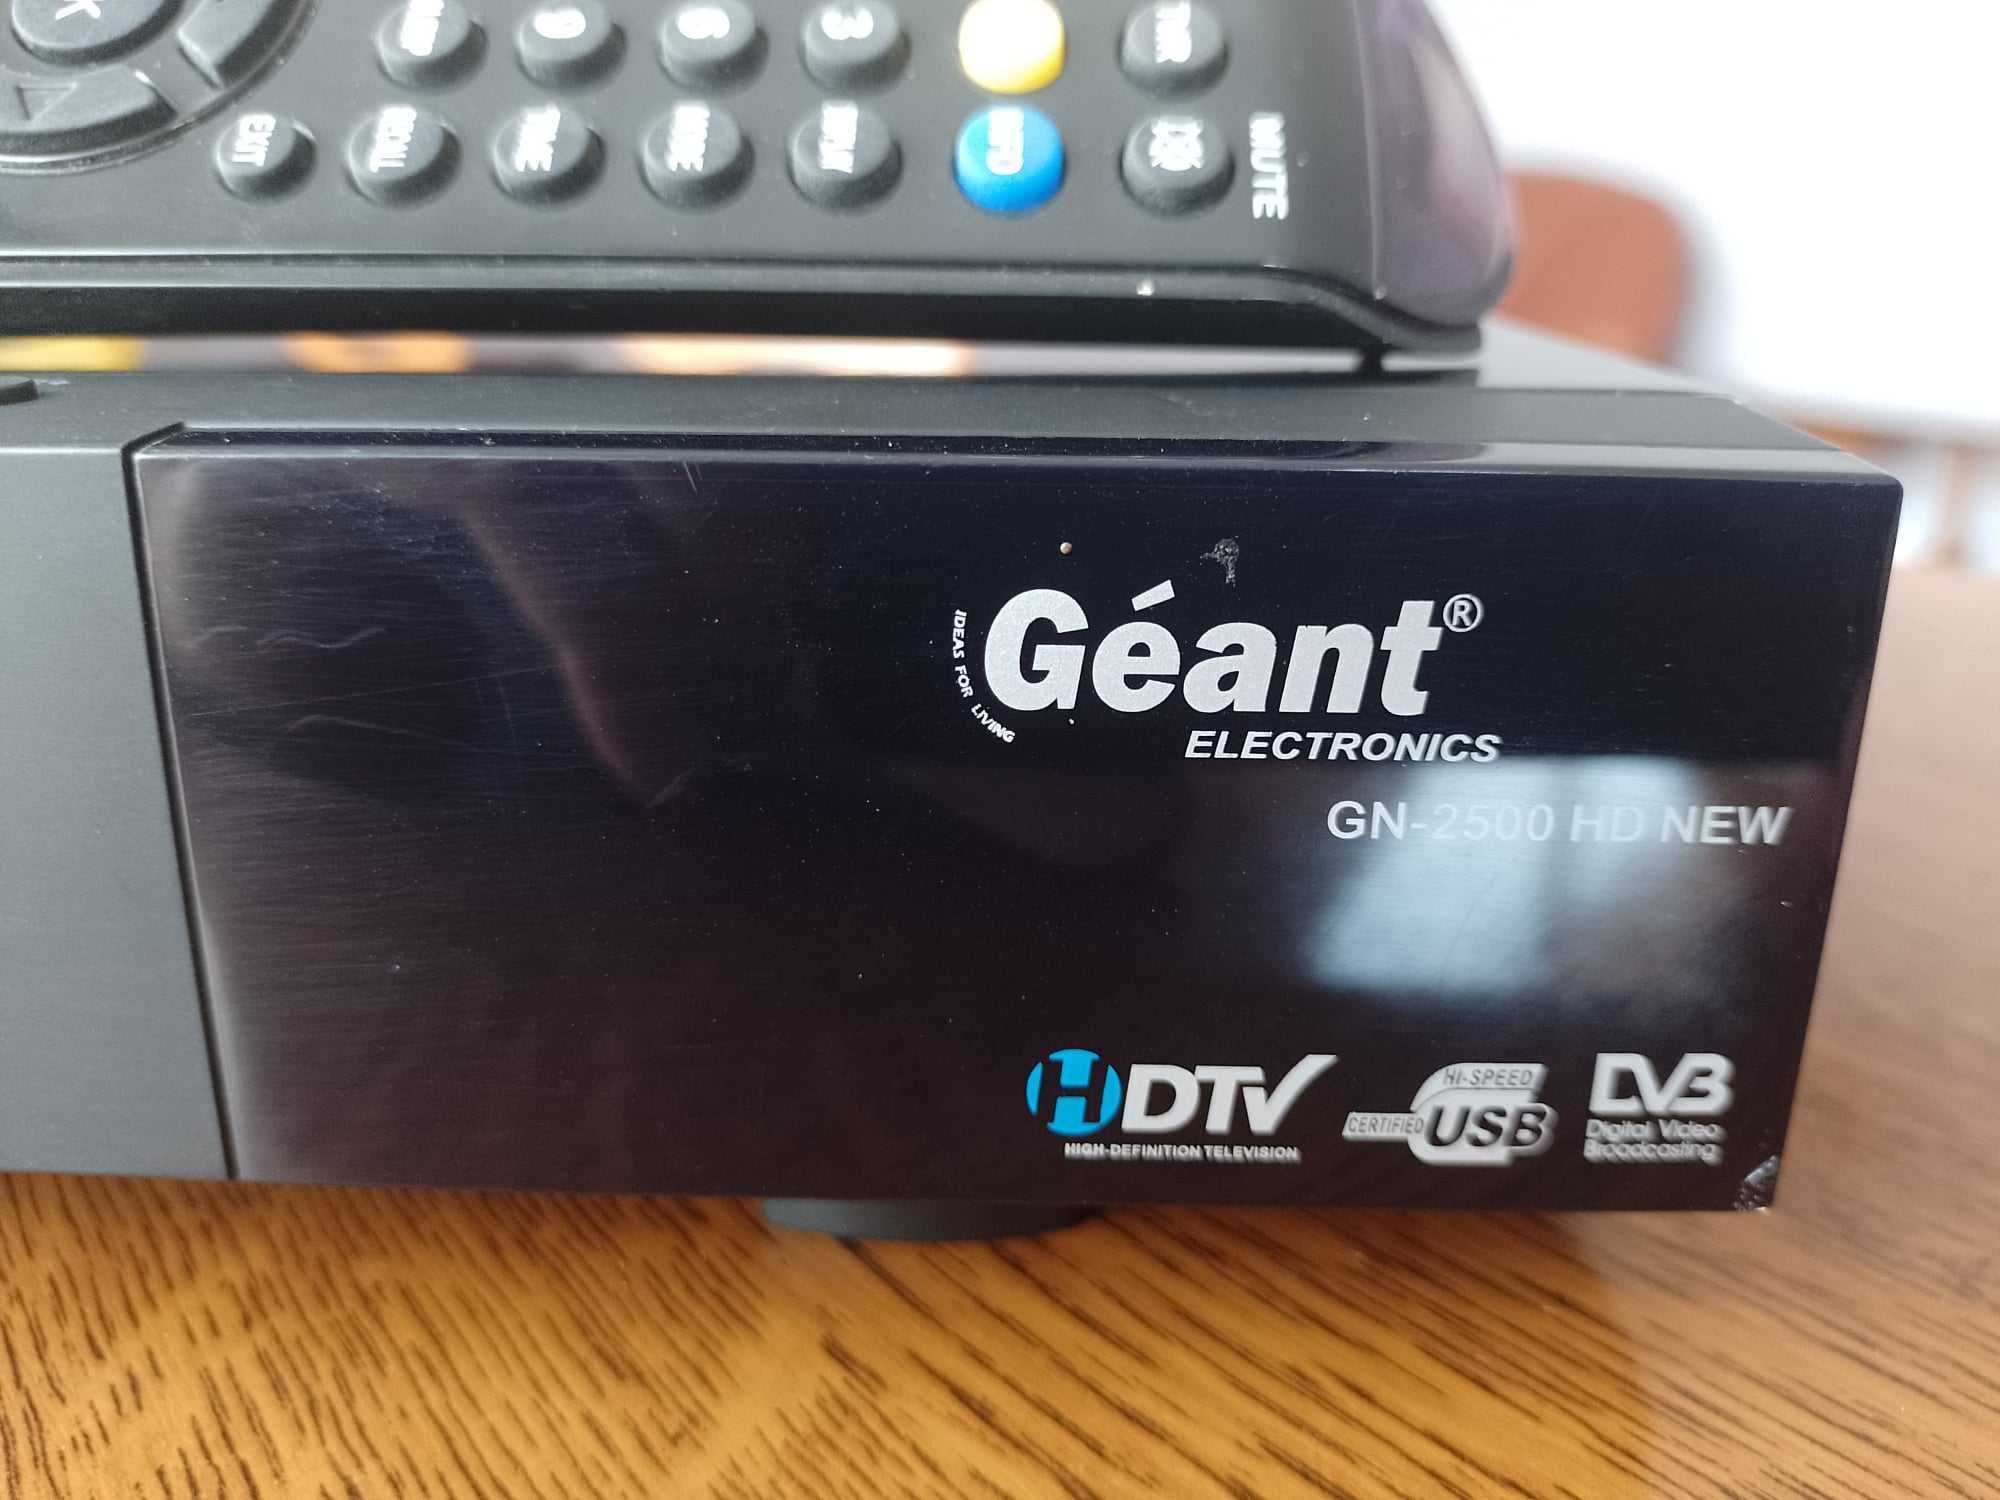 Dekoder Geant używany sprawny GN-2500 HD